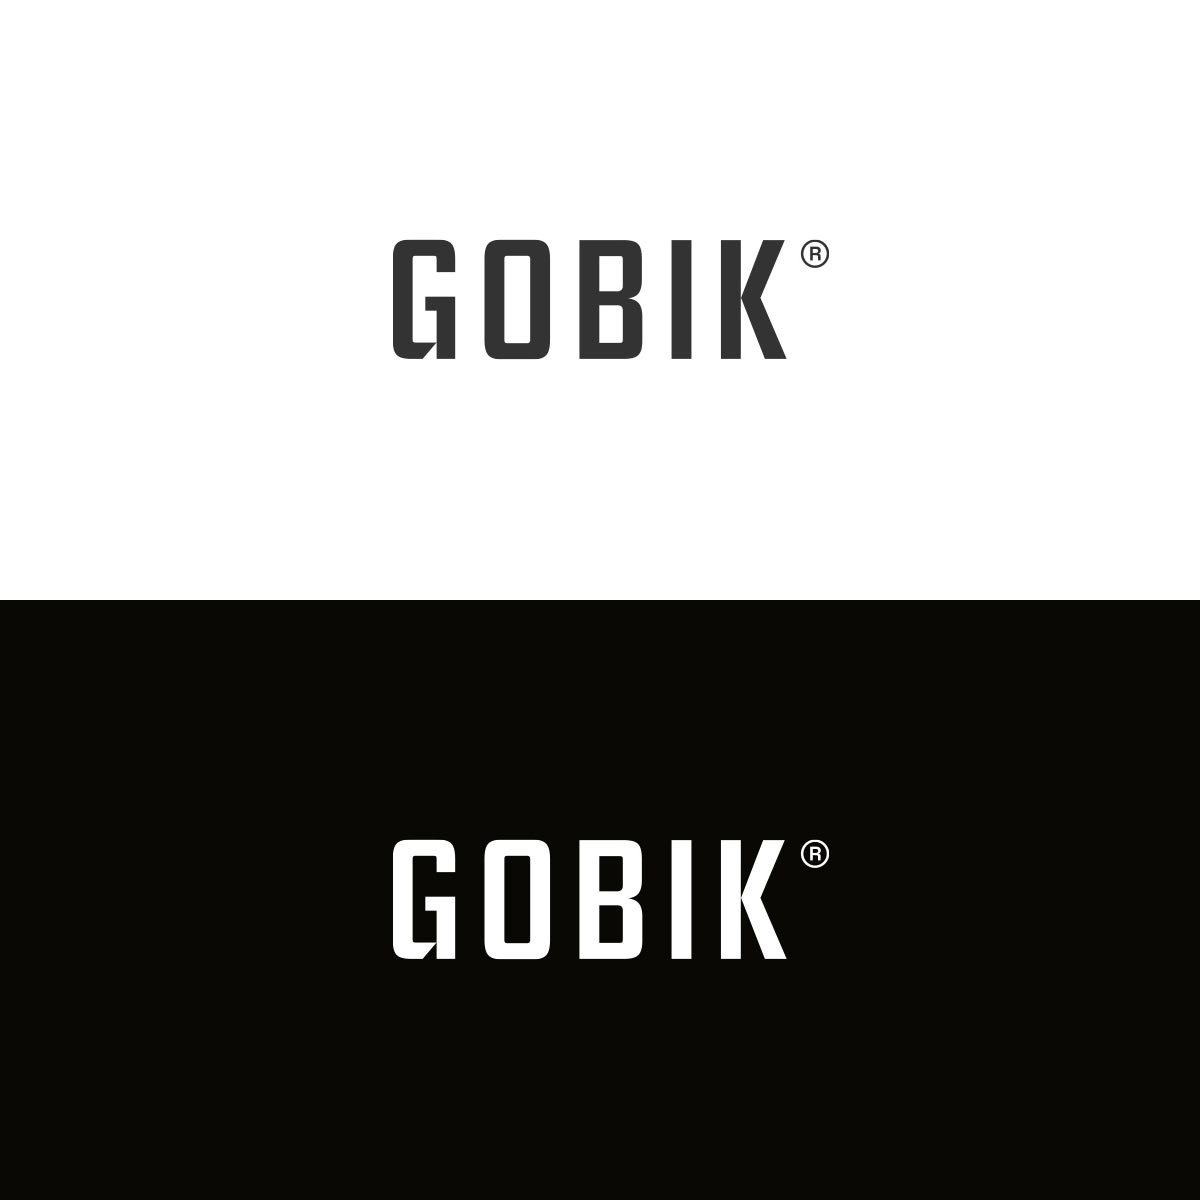 Gobik estrena una nueva imagen de marca bajo el lema 'What a ride'